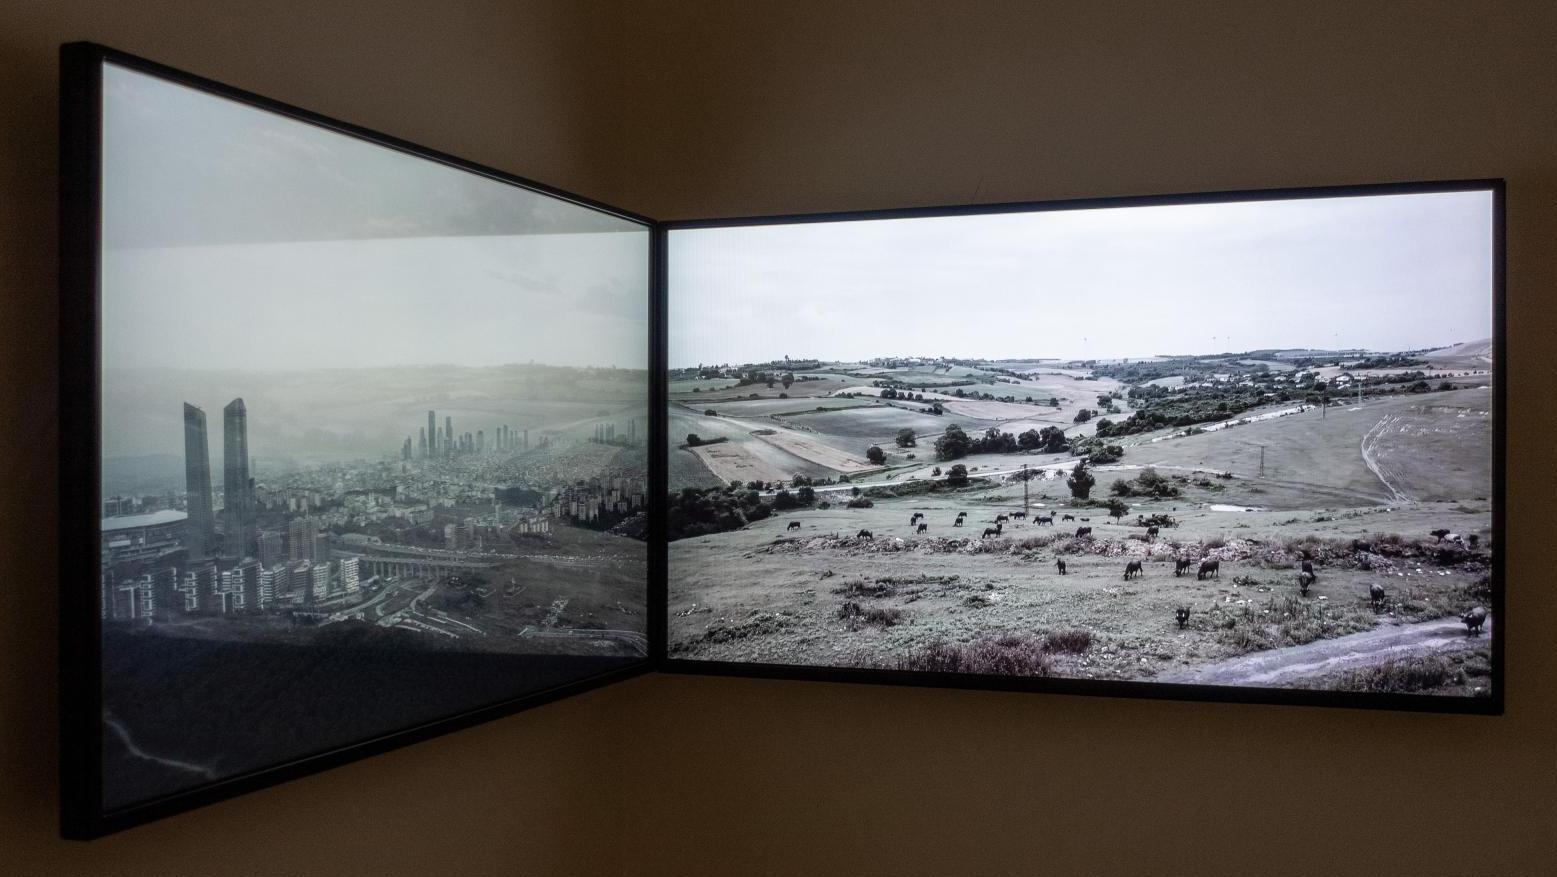 Ozan Atalan (né en 1985), Monochrome, 2019, dim. de l’installation 300 x 300 x 100 cm,... Biennale d’Istanbul, une mémoire engloutie